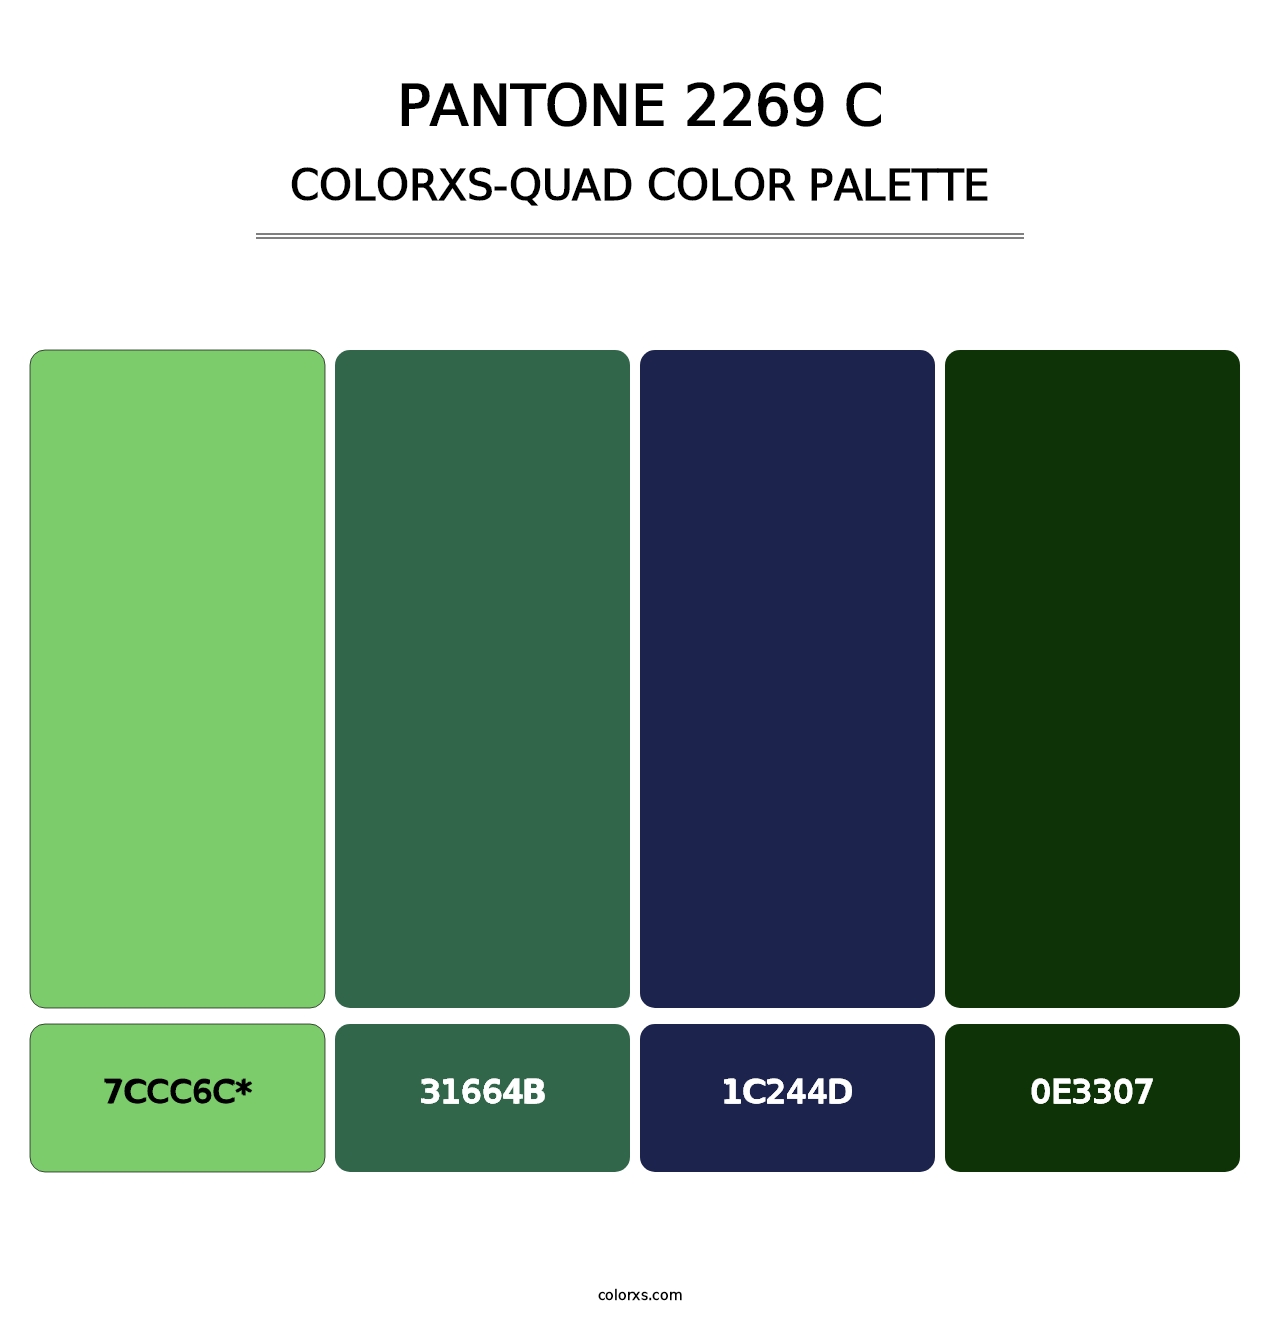 PANTONE 2269 C - Colorxs Quad Palette